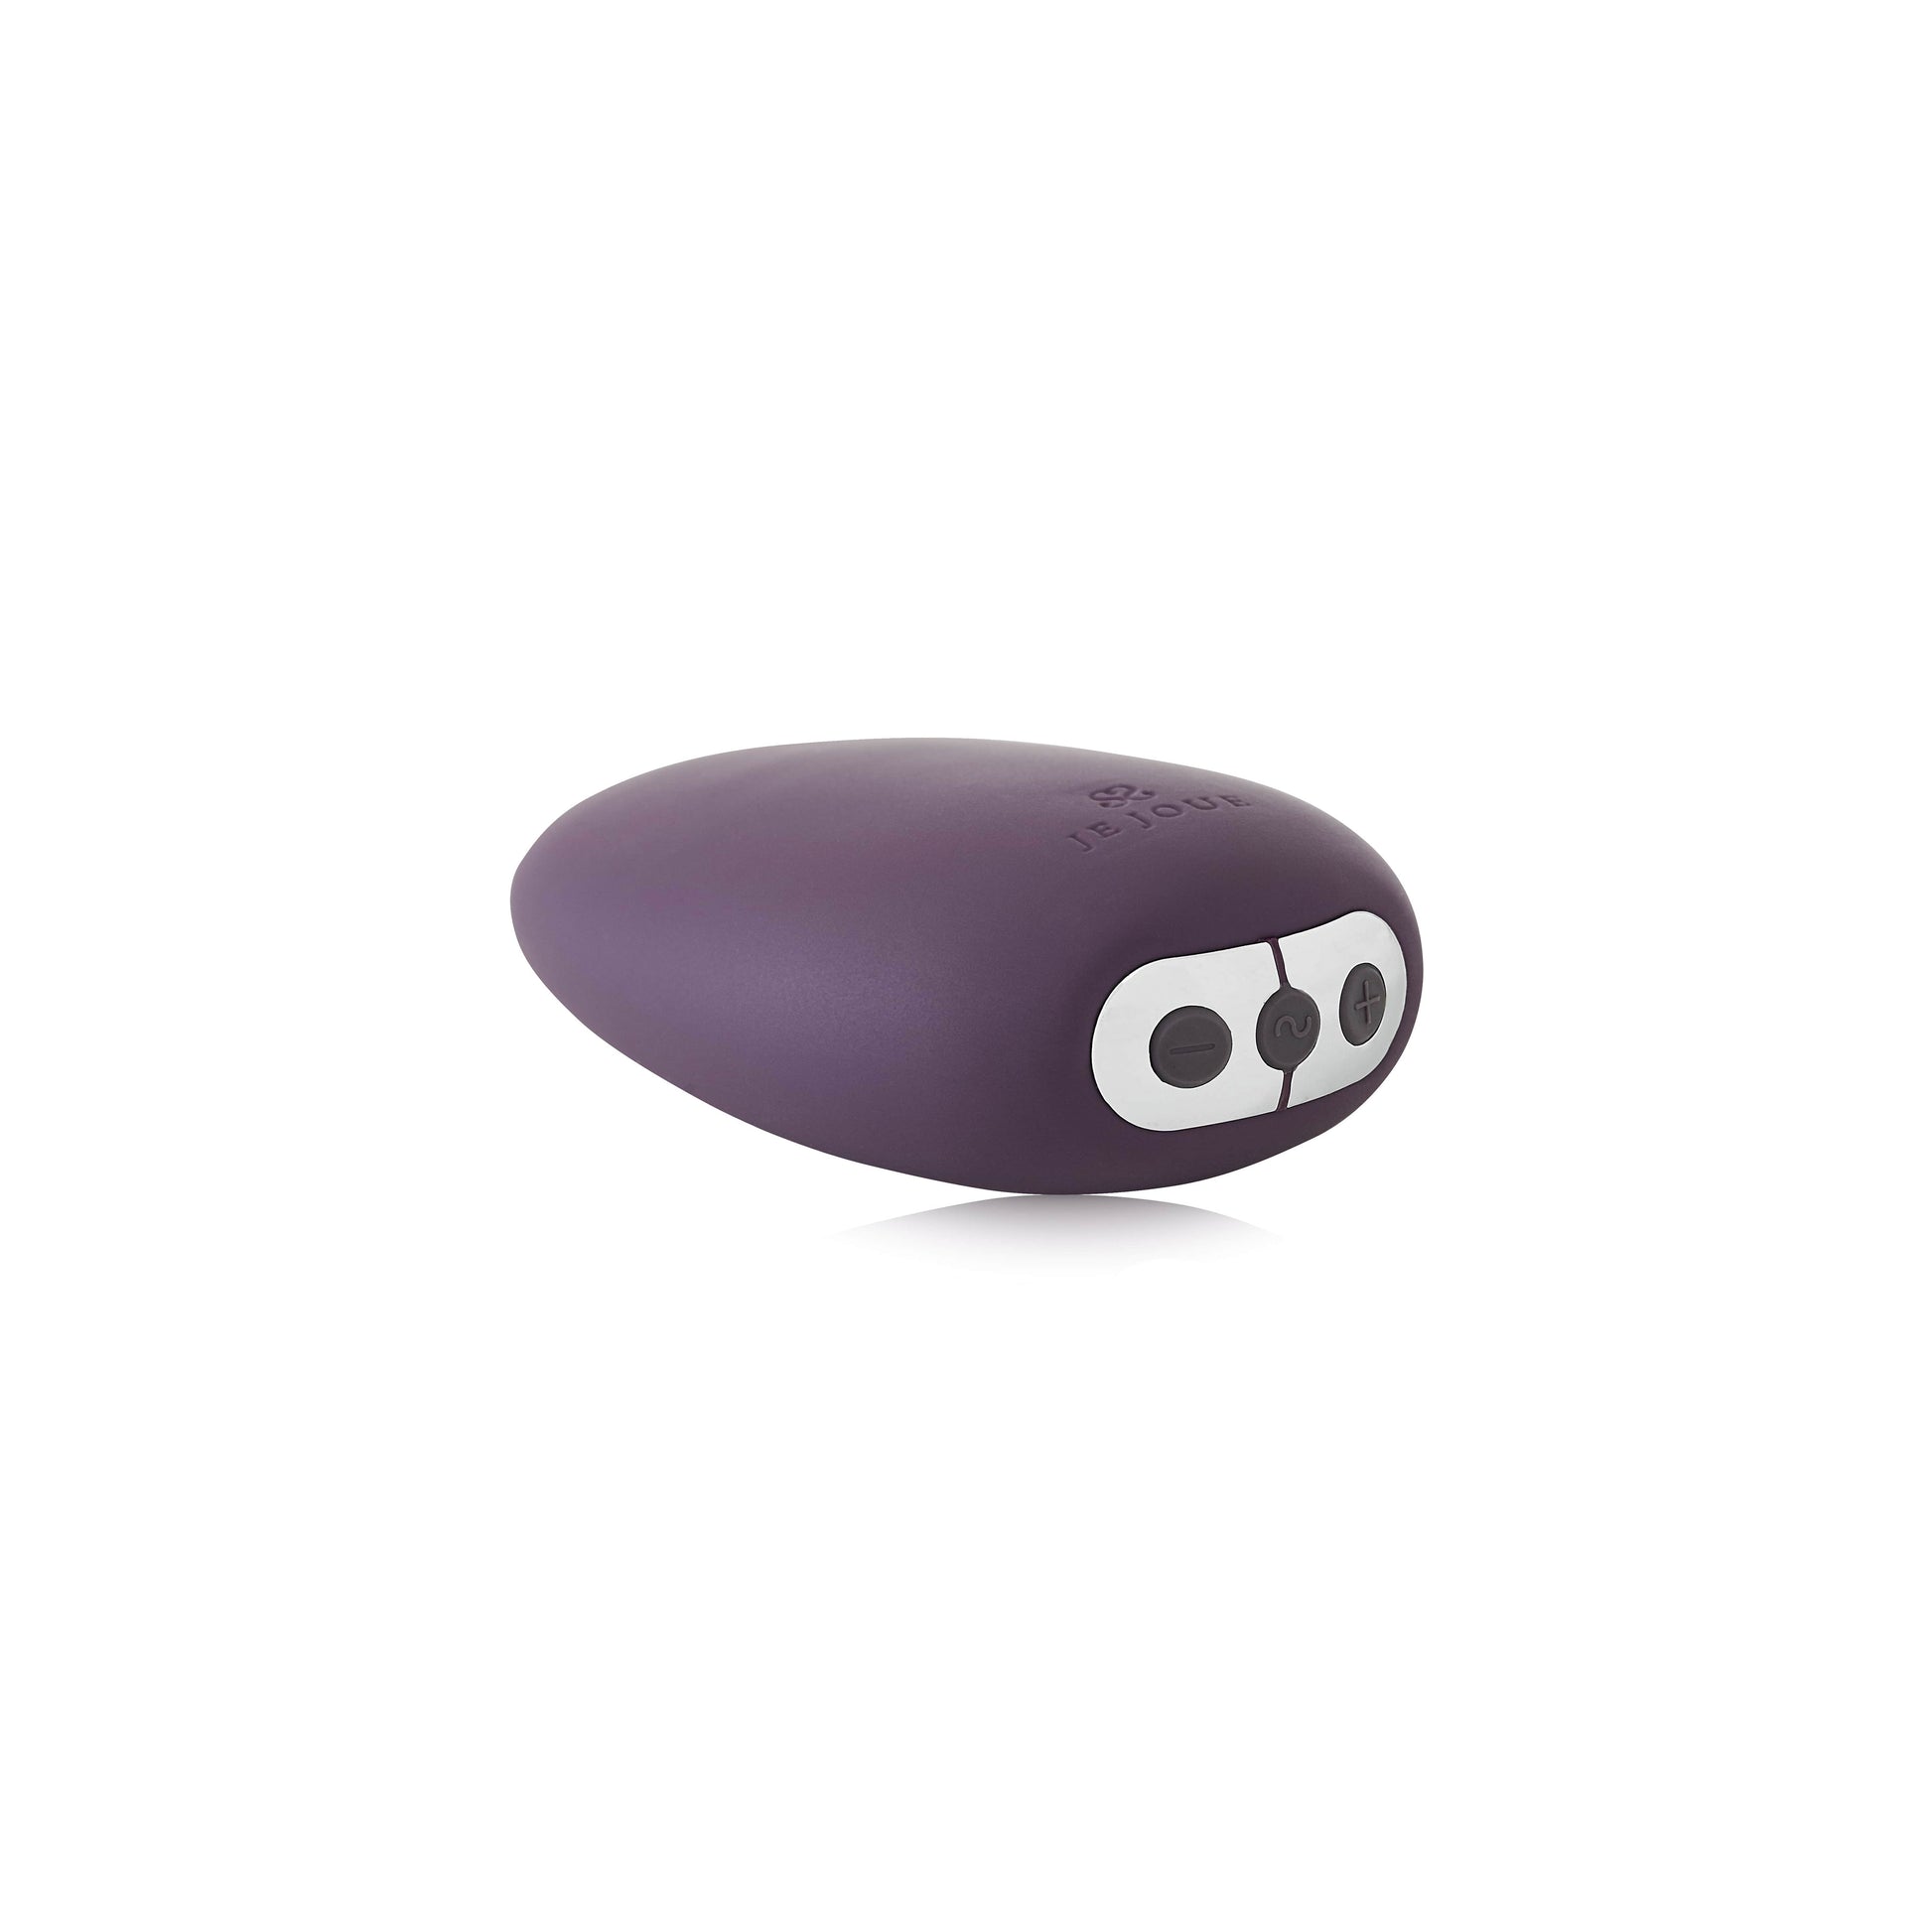 Mimi Vibrator in purple button view 